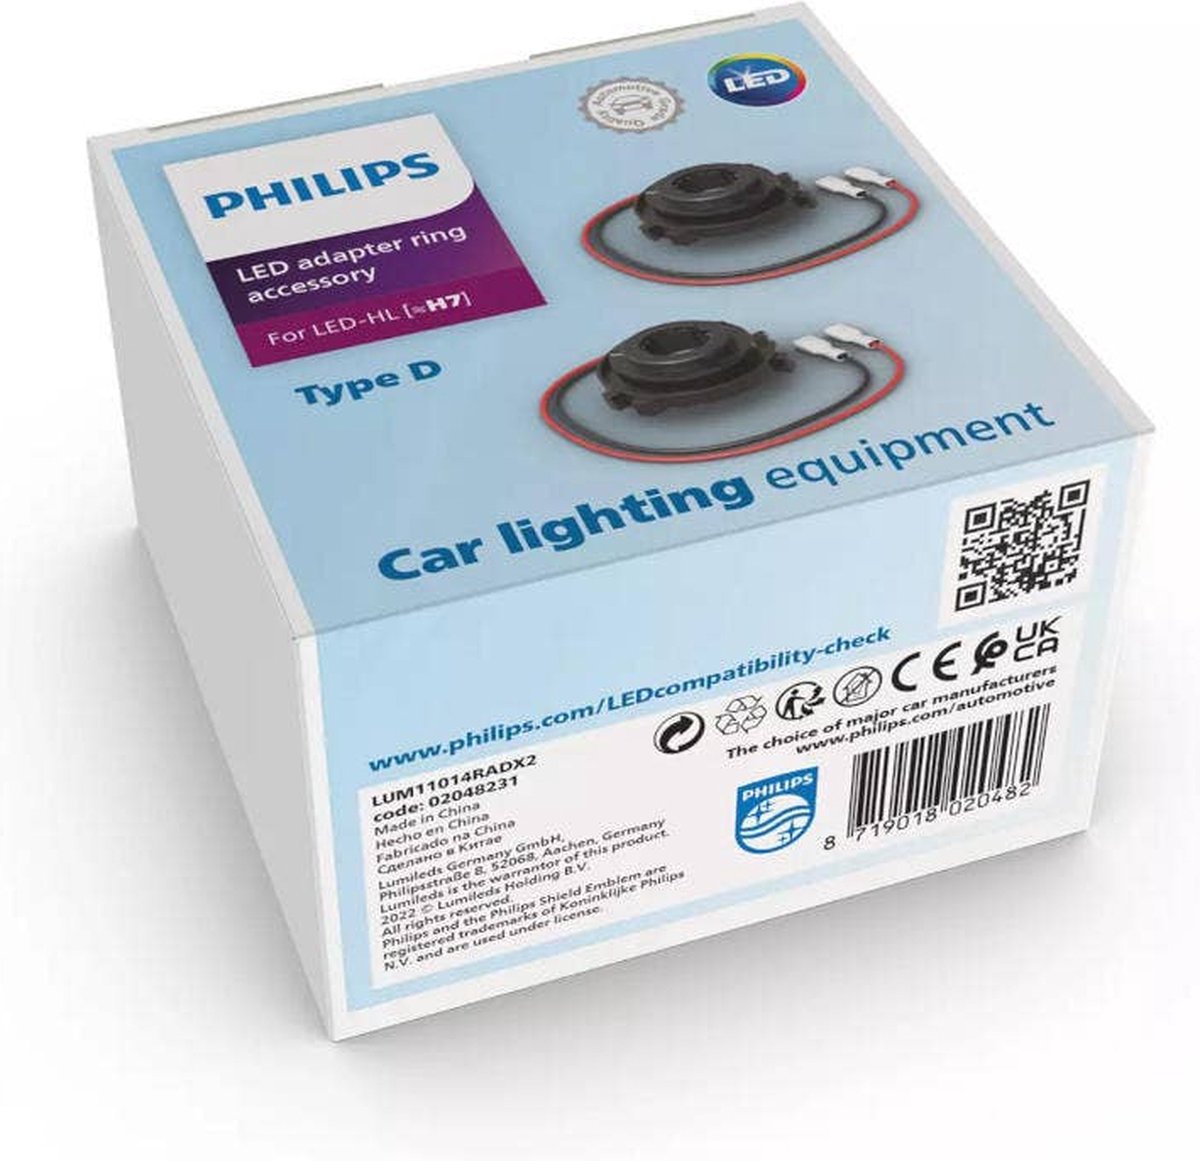 Philips LED Adapterringen type RAD LUM11014RADX2